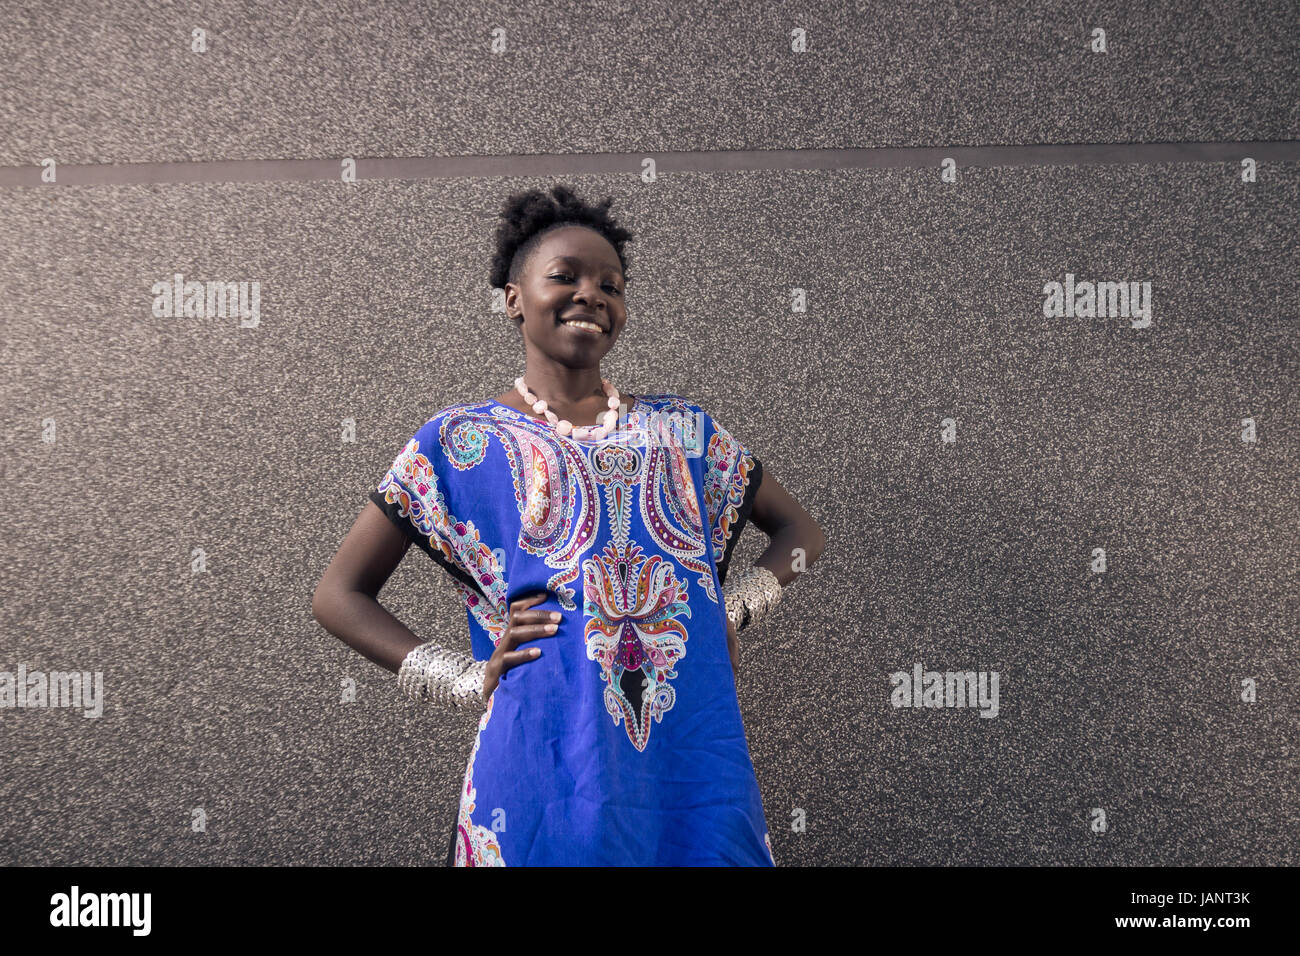 L'un, jeune adulte, black african american woman, 29 ans, à la caméra à l'extérieur, mur gris, portant robe bleue, smiling happy, mains sur les hanches Banque D'Images